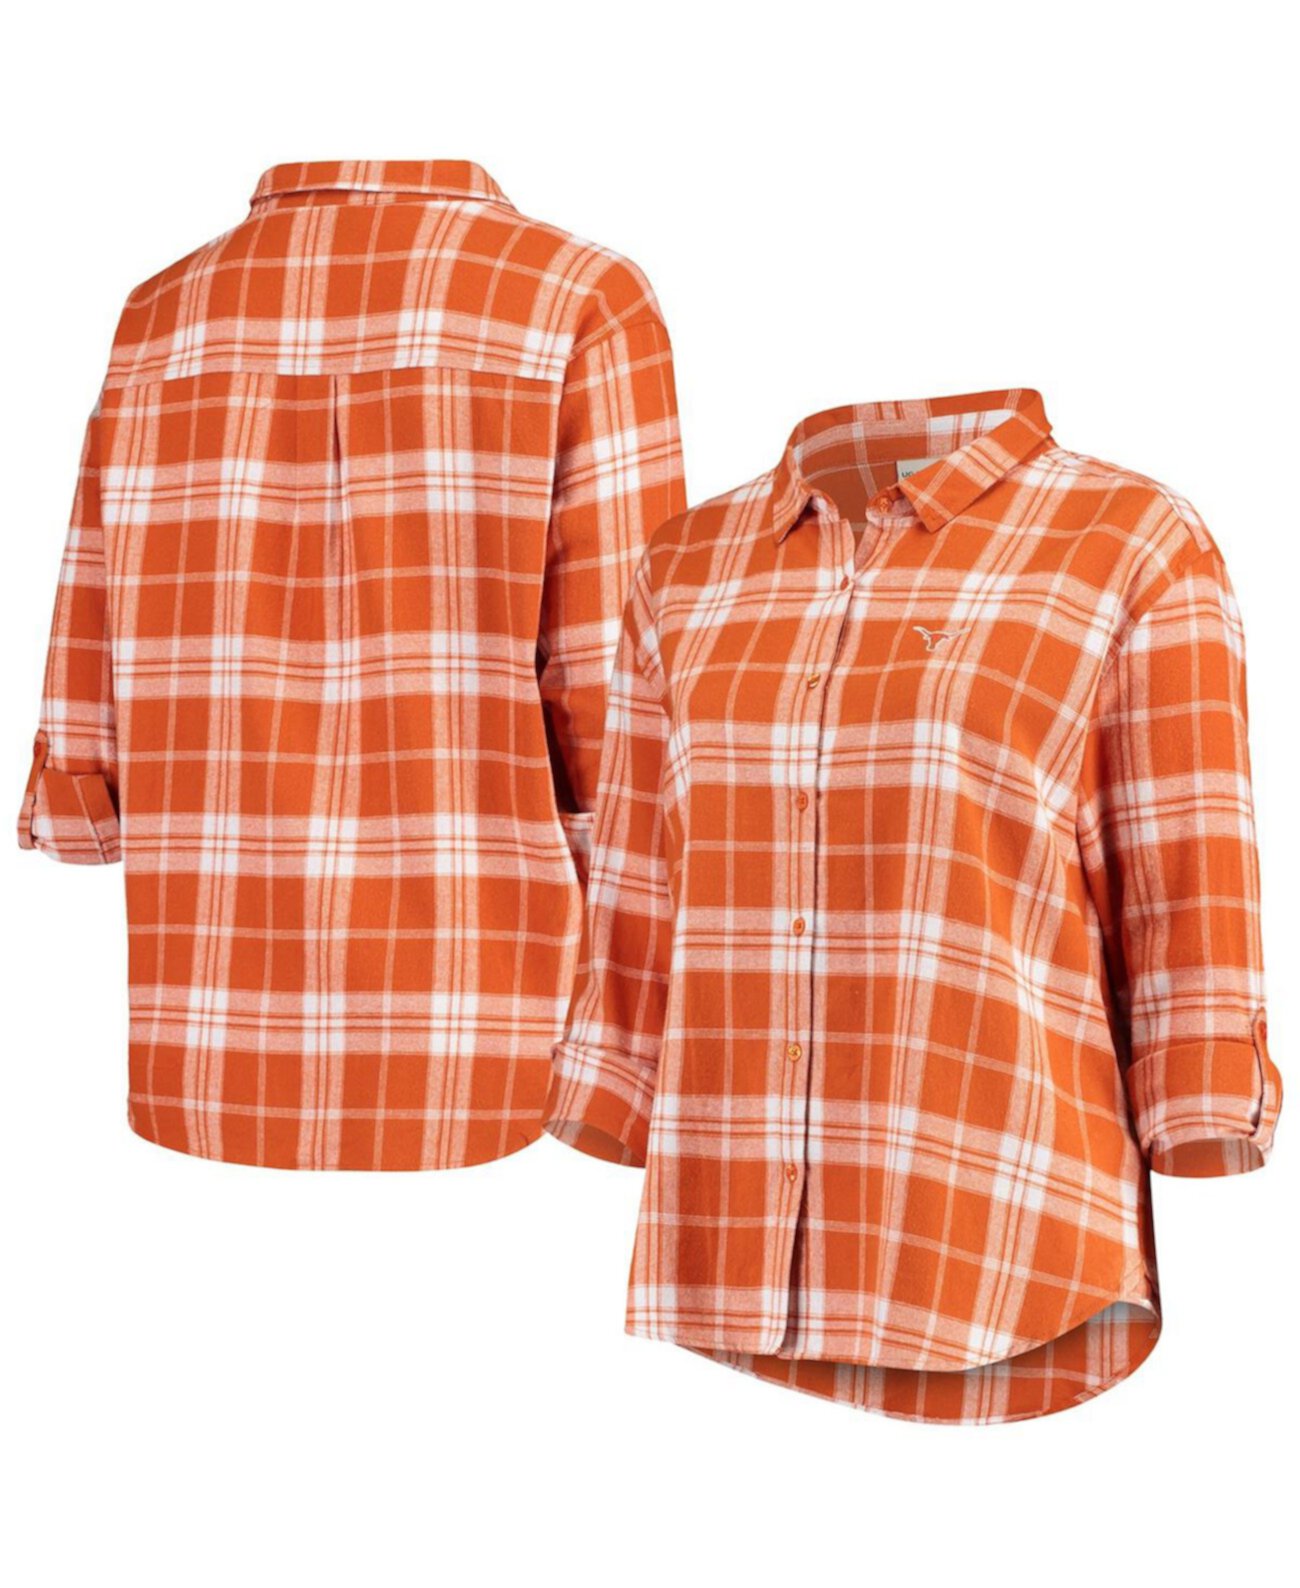 Женская фланелевая рубашка на пуговицах в клетку Texas Orange Texas Longhorns больших размеров Missy Boyfriend University Girl